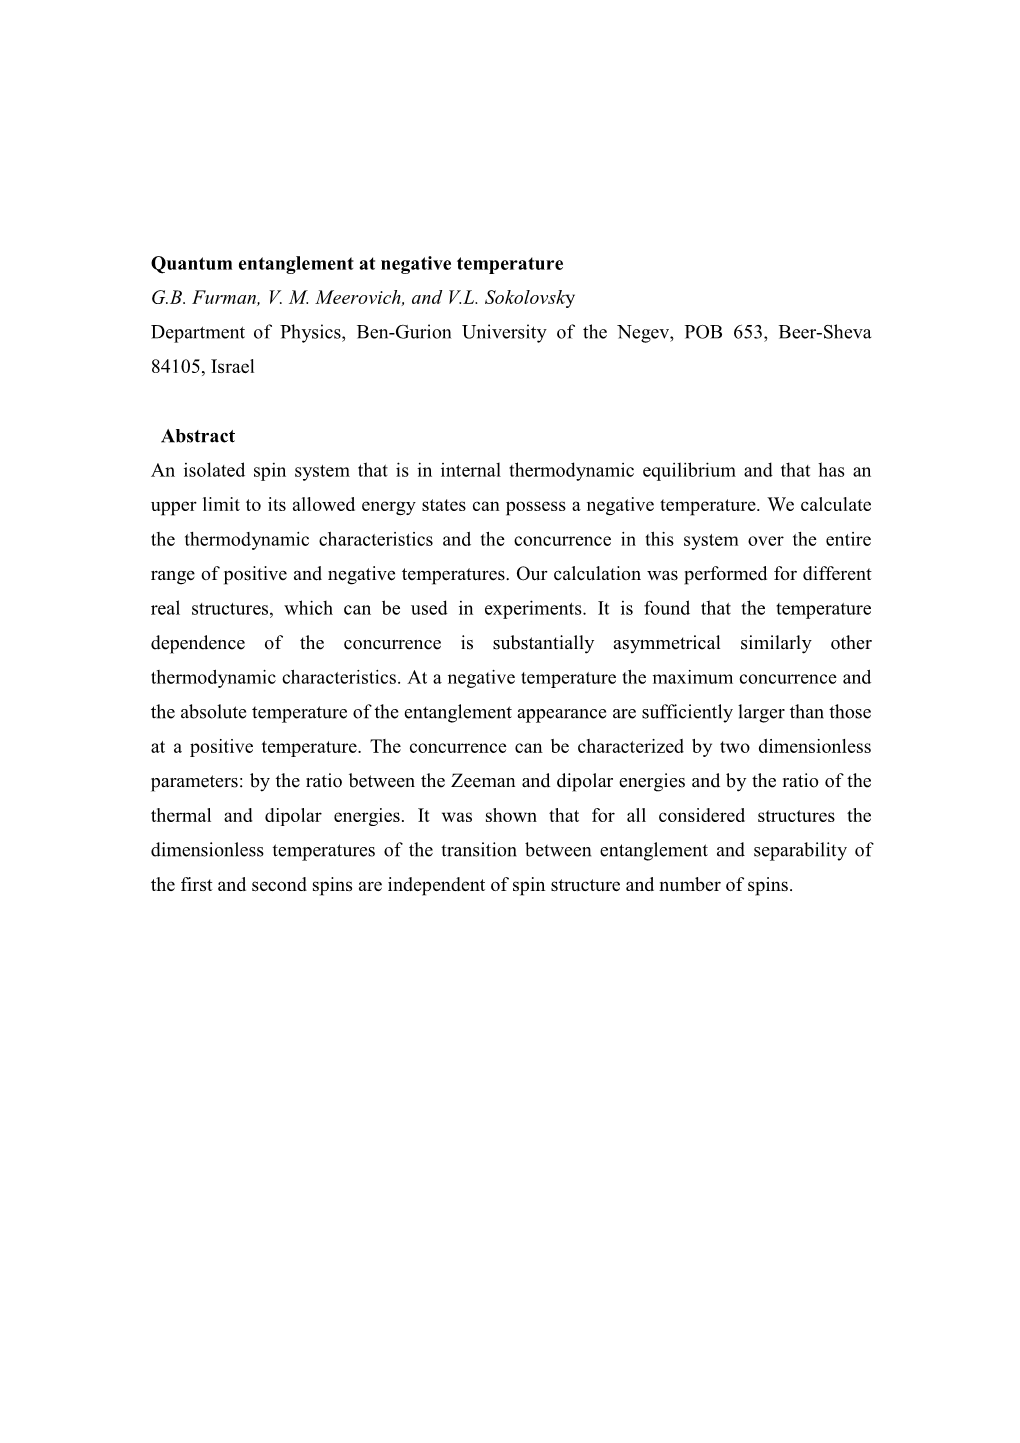 Quantum Entanglement at Negative Temperature G.B. Furman, V. M. Meerovich, and V.L